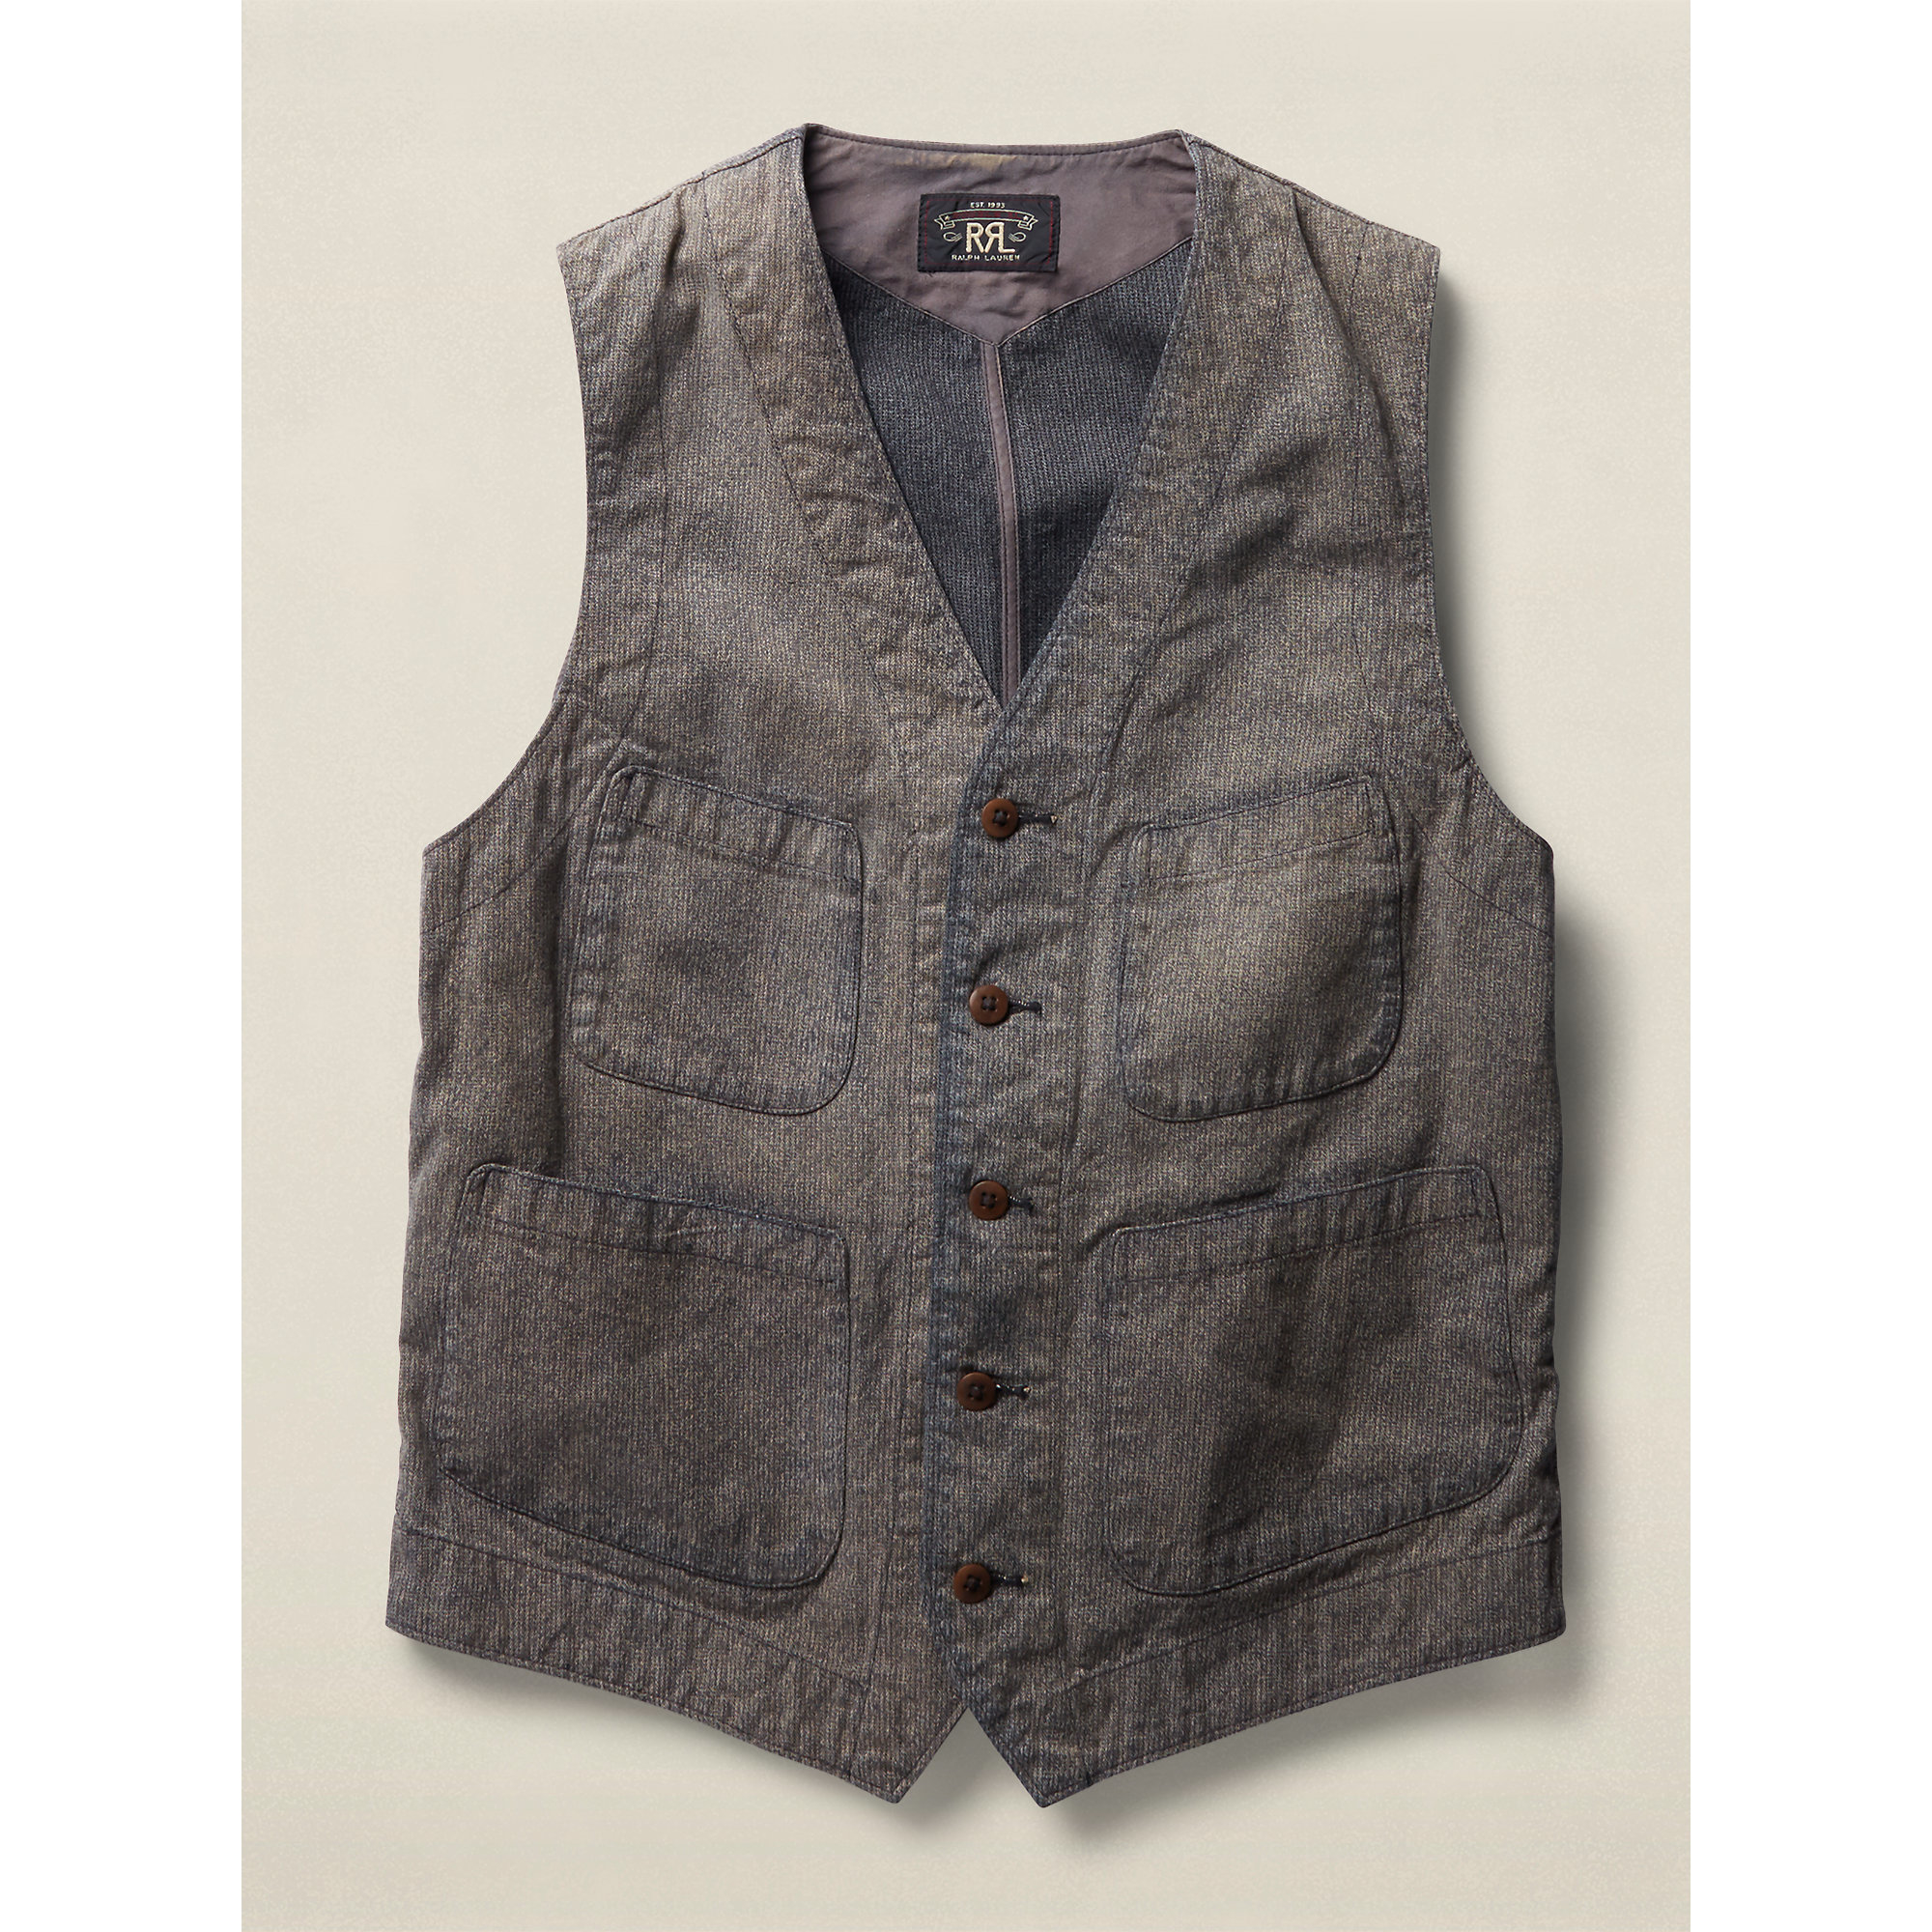 Lyst - Rrl Jackson Cotton Jaspé Vest in Gray for Men